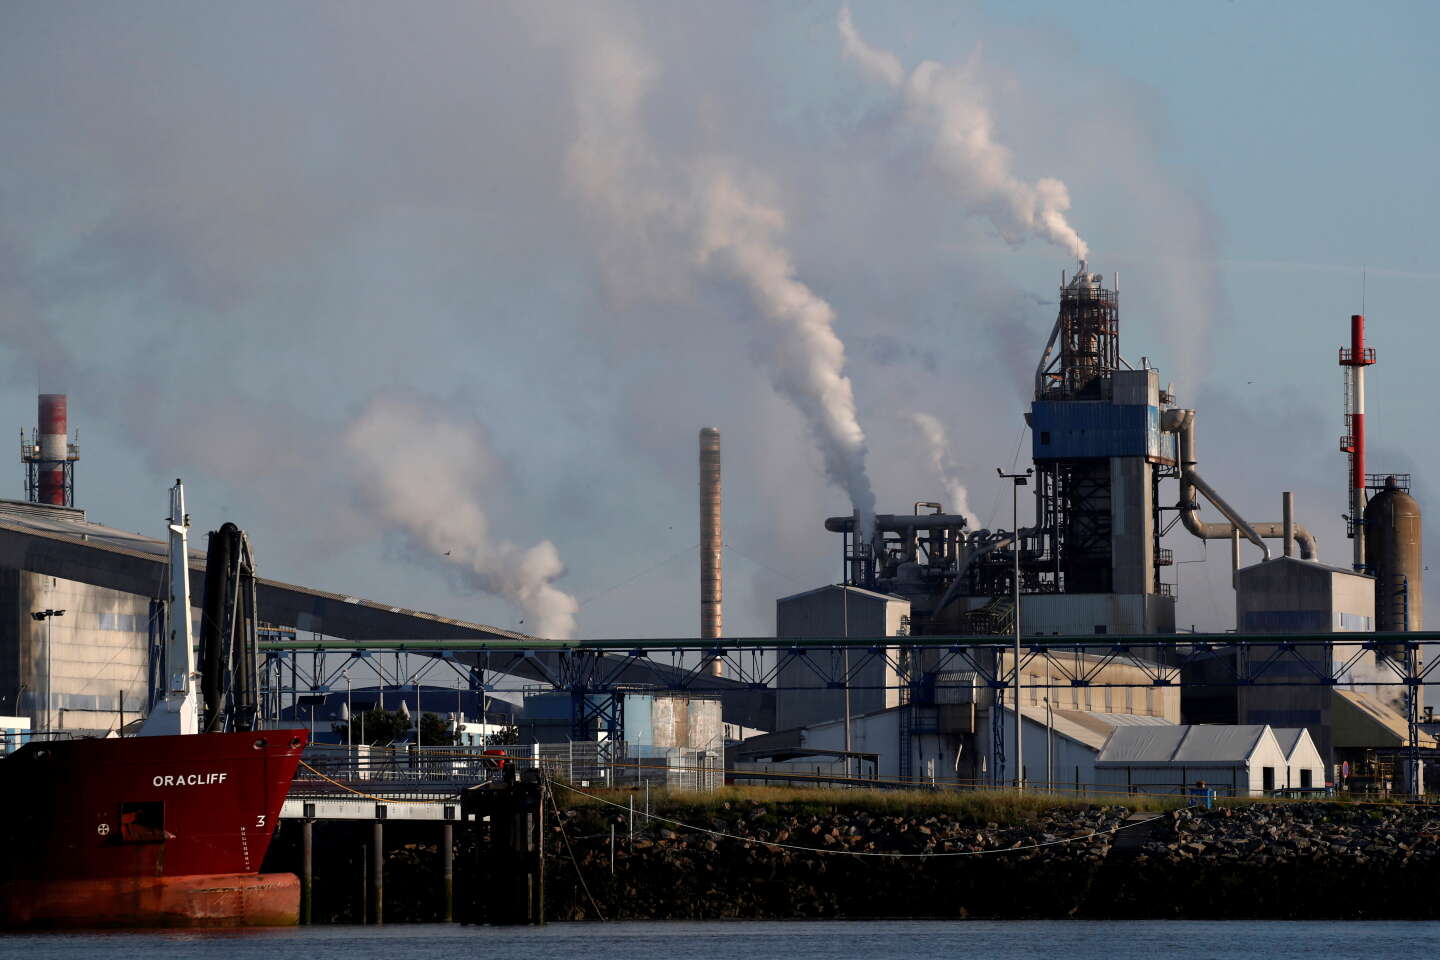 En Bretagne, l’usine d’engrais Yara, sommée
de se mettre aux normes environnementales, fait le choix des licenciements